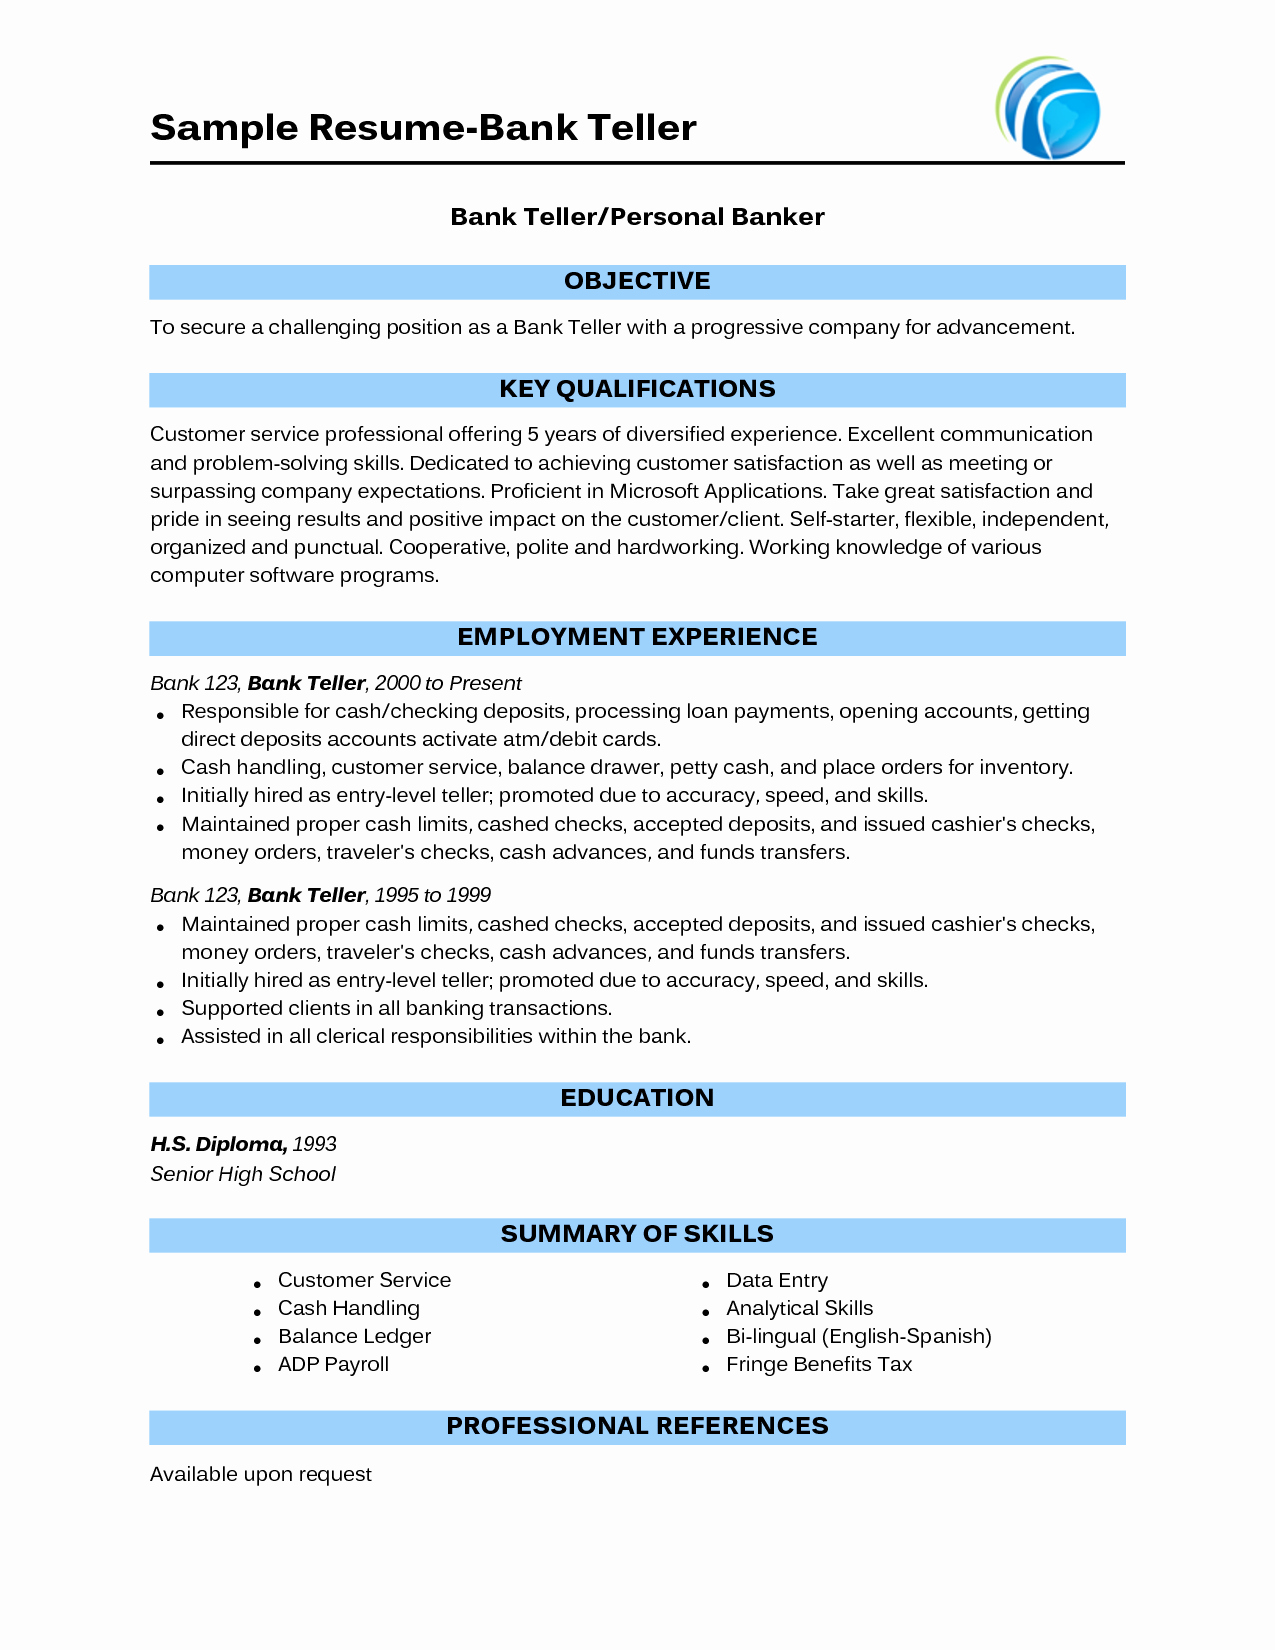 Bank Teller Job Description for Resume